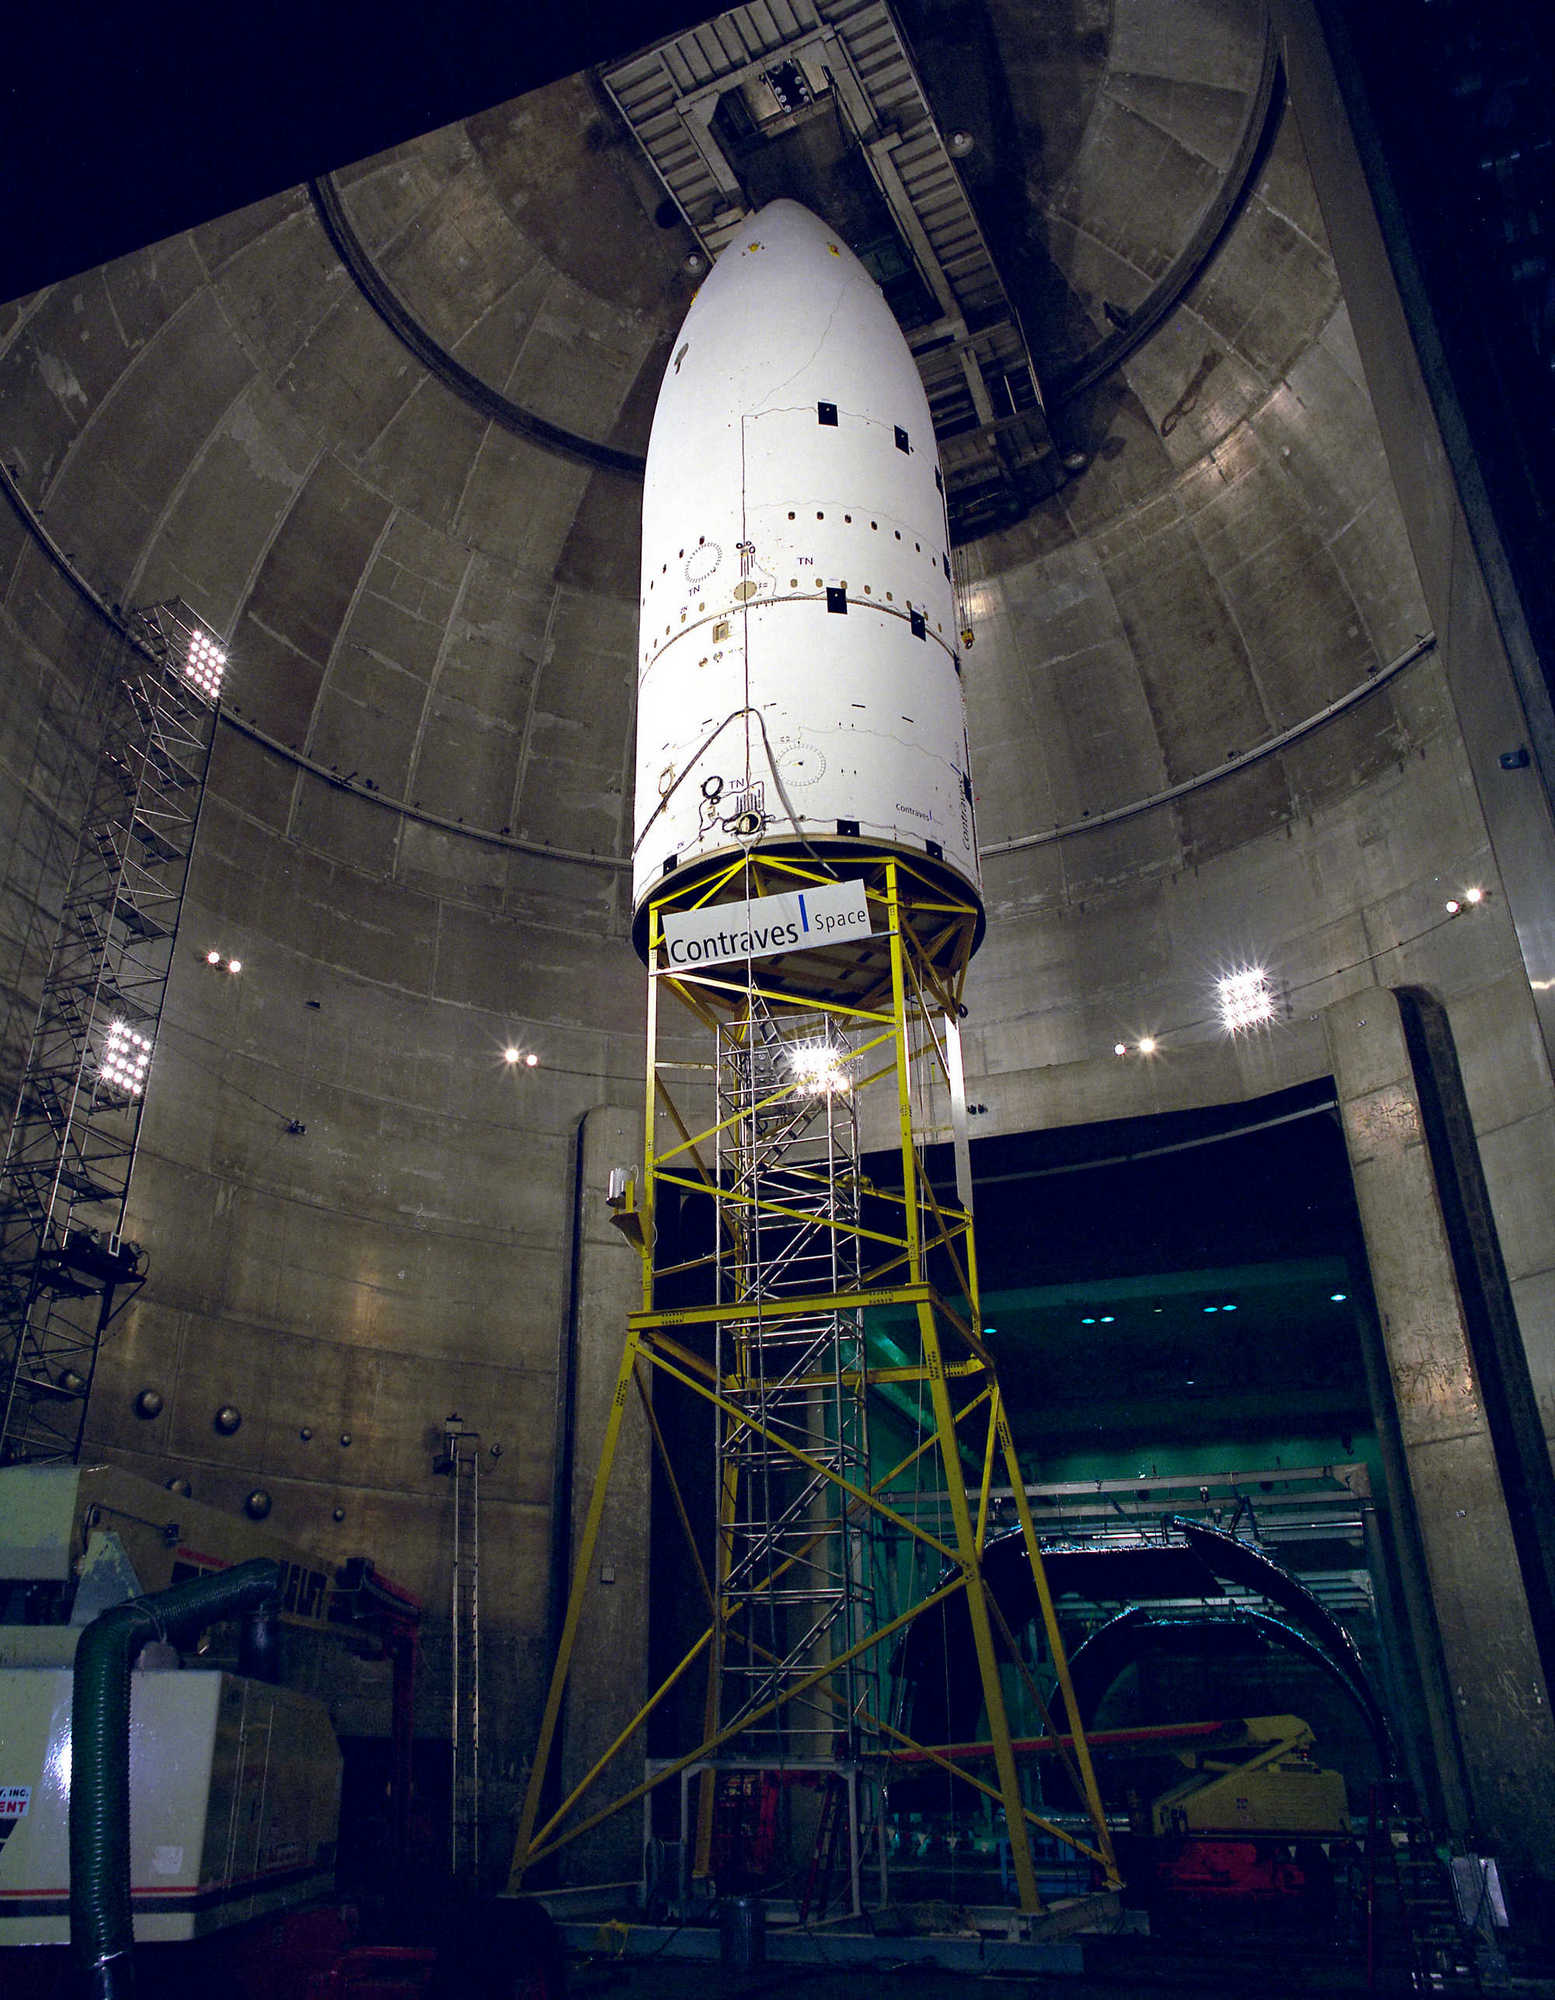 Головной обтекатель Ариан-5 (5,4 м в диаметре) на тестах в вакуумной камере NASA